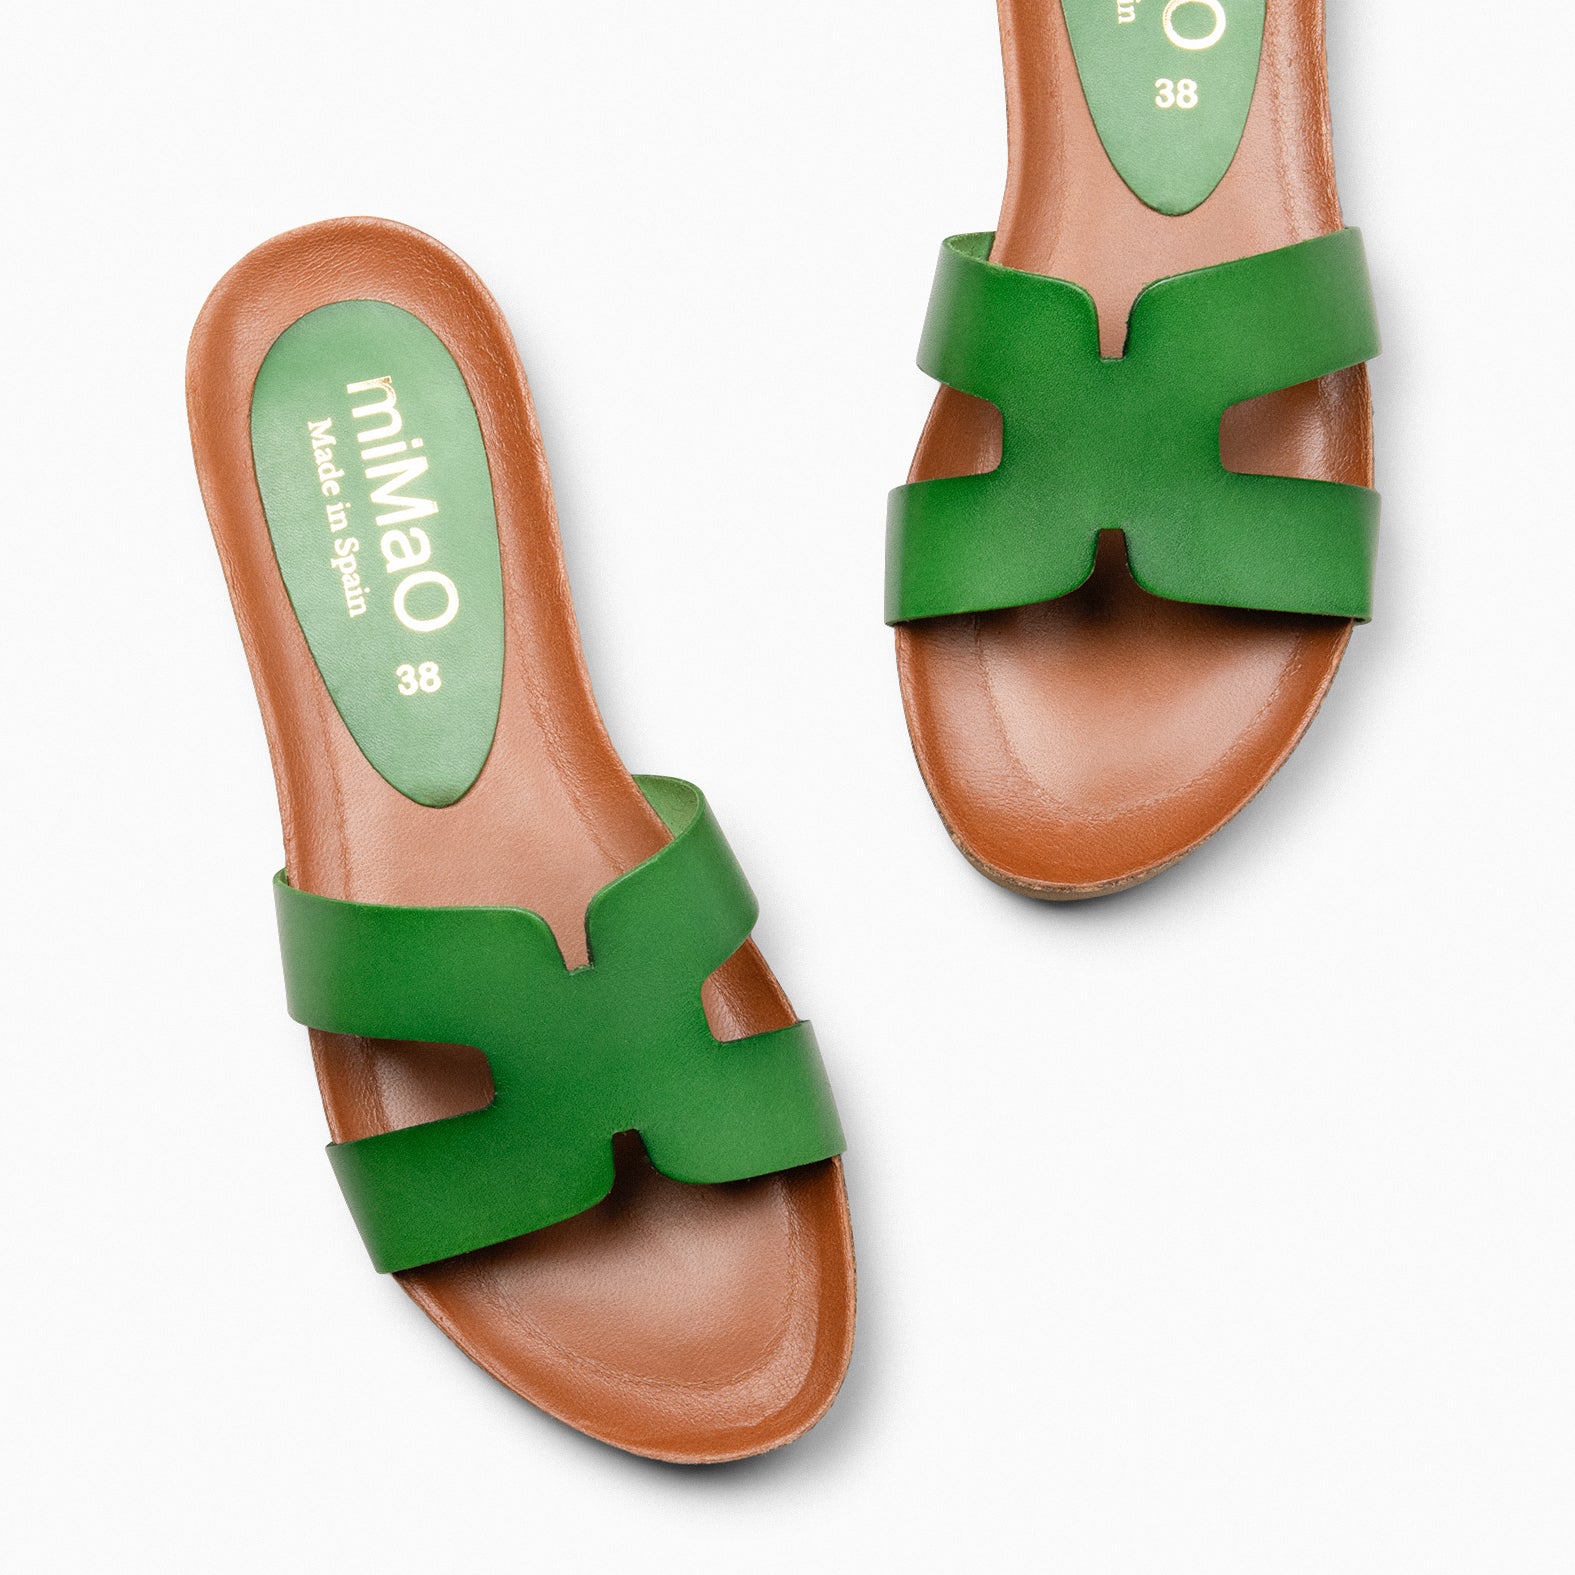 CLIVIA - GREEN Flat Sandals